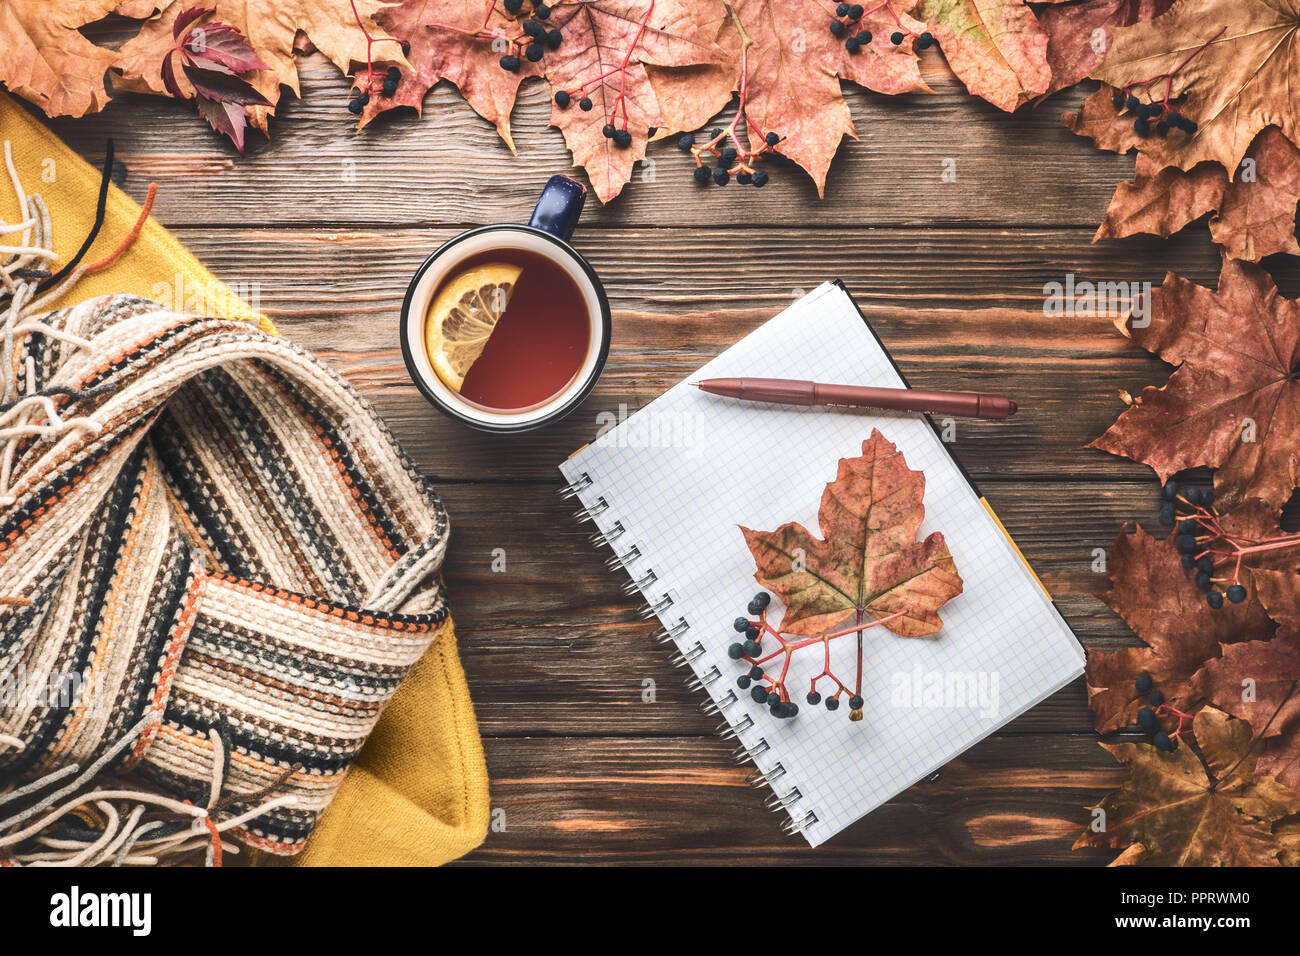 Herbst Mode saisonale Konzept gelb warm weicher Pullover skandinavischen Strickschal Tasse heißer schwarzer Tee Kaffee Fallen gefallen Ahornblätter auf hölzernen Tisch Stockfoto